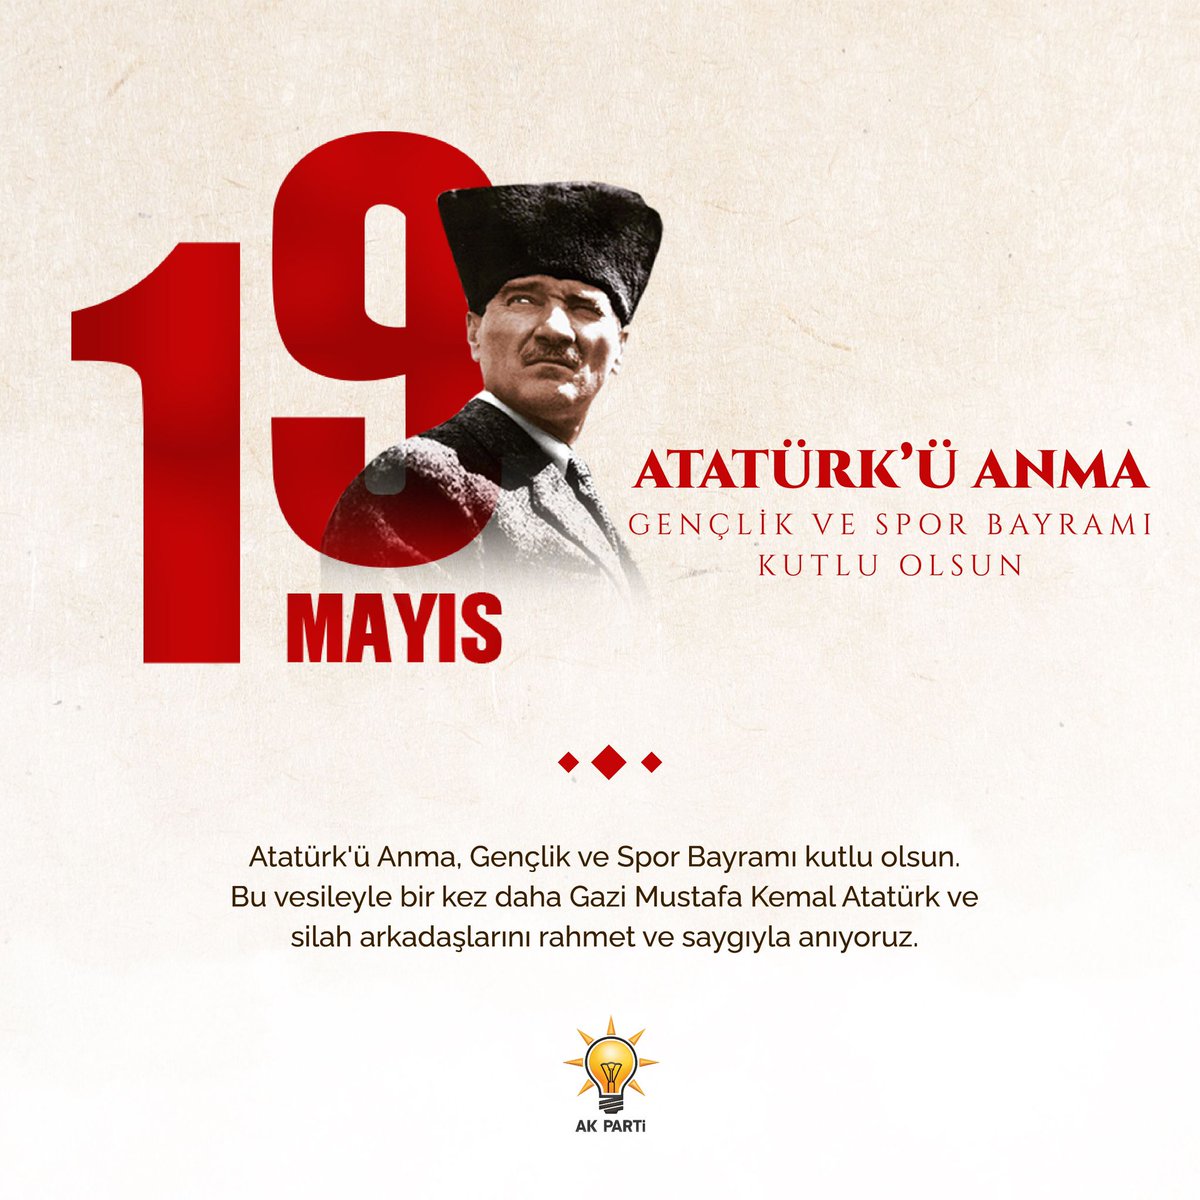 #19Mayıs Atatürk'ü Anma, Gençlik ve Spor Bayramı kutlu olsun. Bu vesileyle bir kez daha Gazi Mustafa Kemal Atatürk ve silah arkadaşlarını rahmet ve saygıyla anıyoruz.